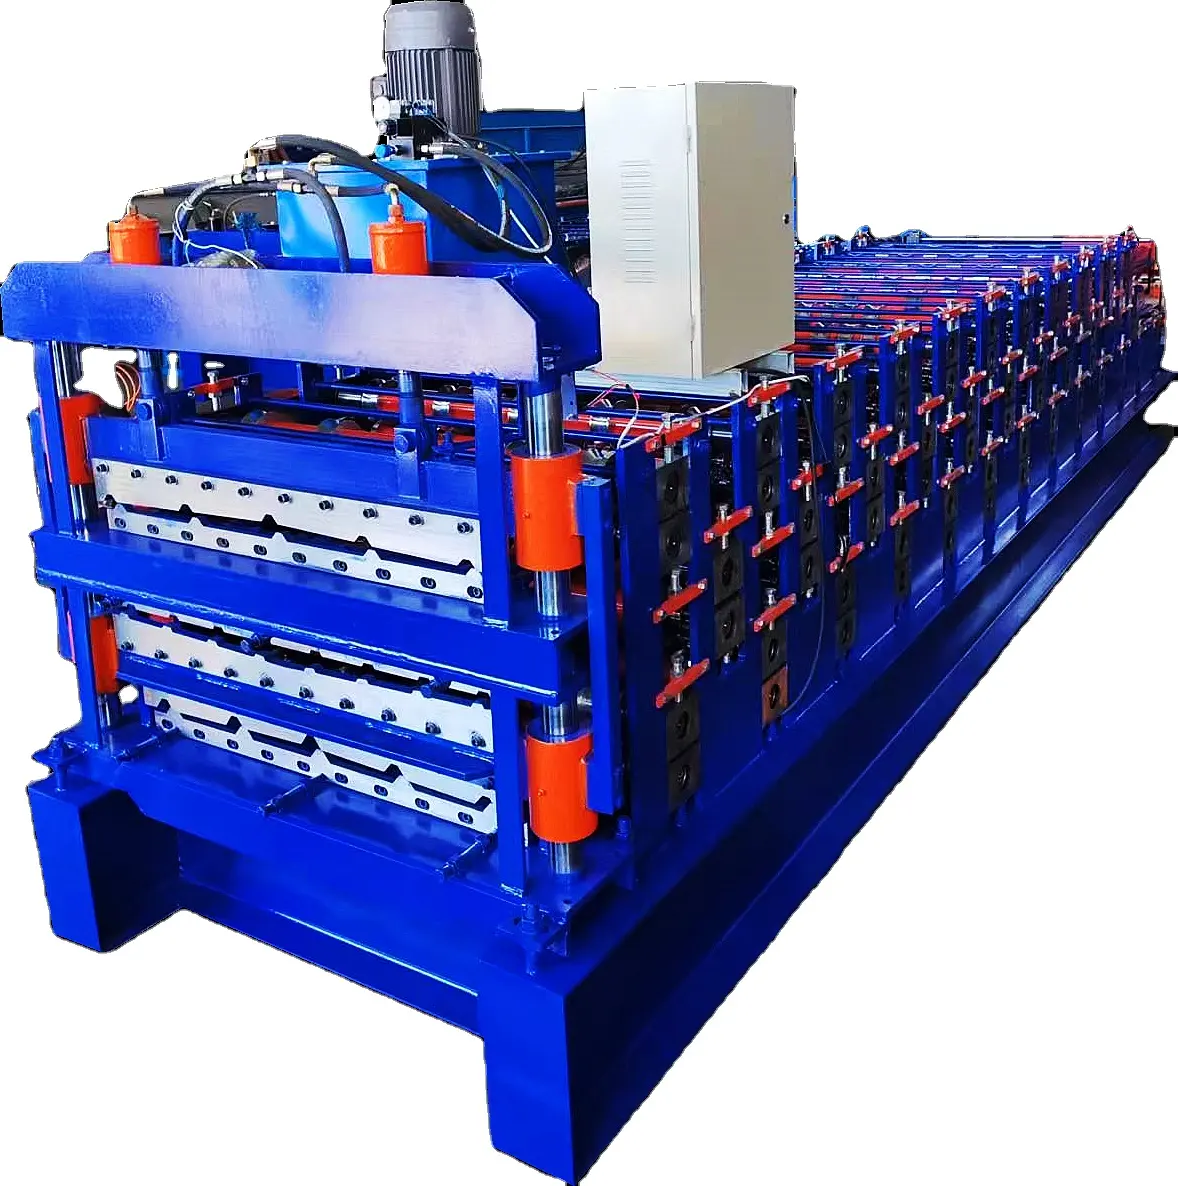 Kammfliesenformmaschine vollautomatische Farbstahlmaschine Maschinen Bauarbeiten